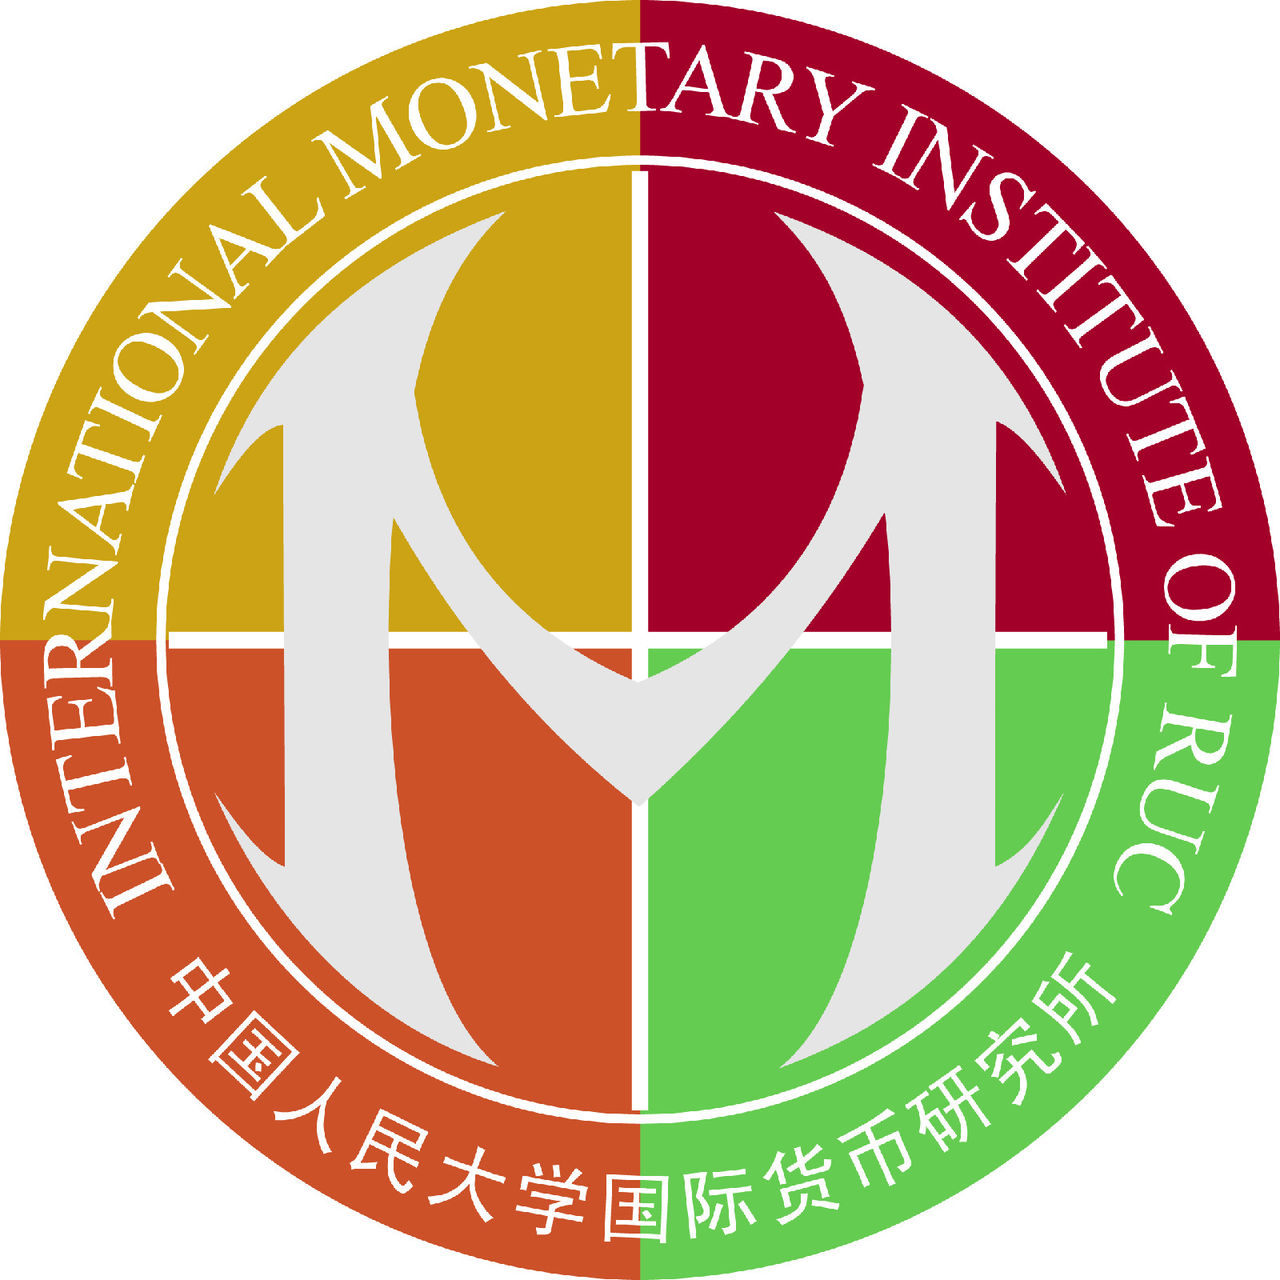 IMI(中國人民大學國際貨幣研究所)